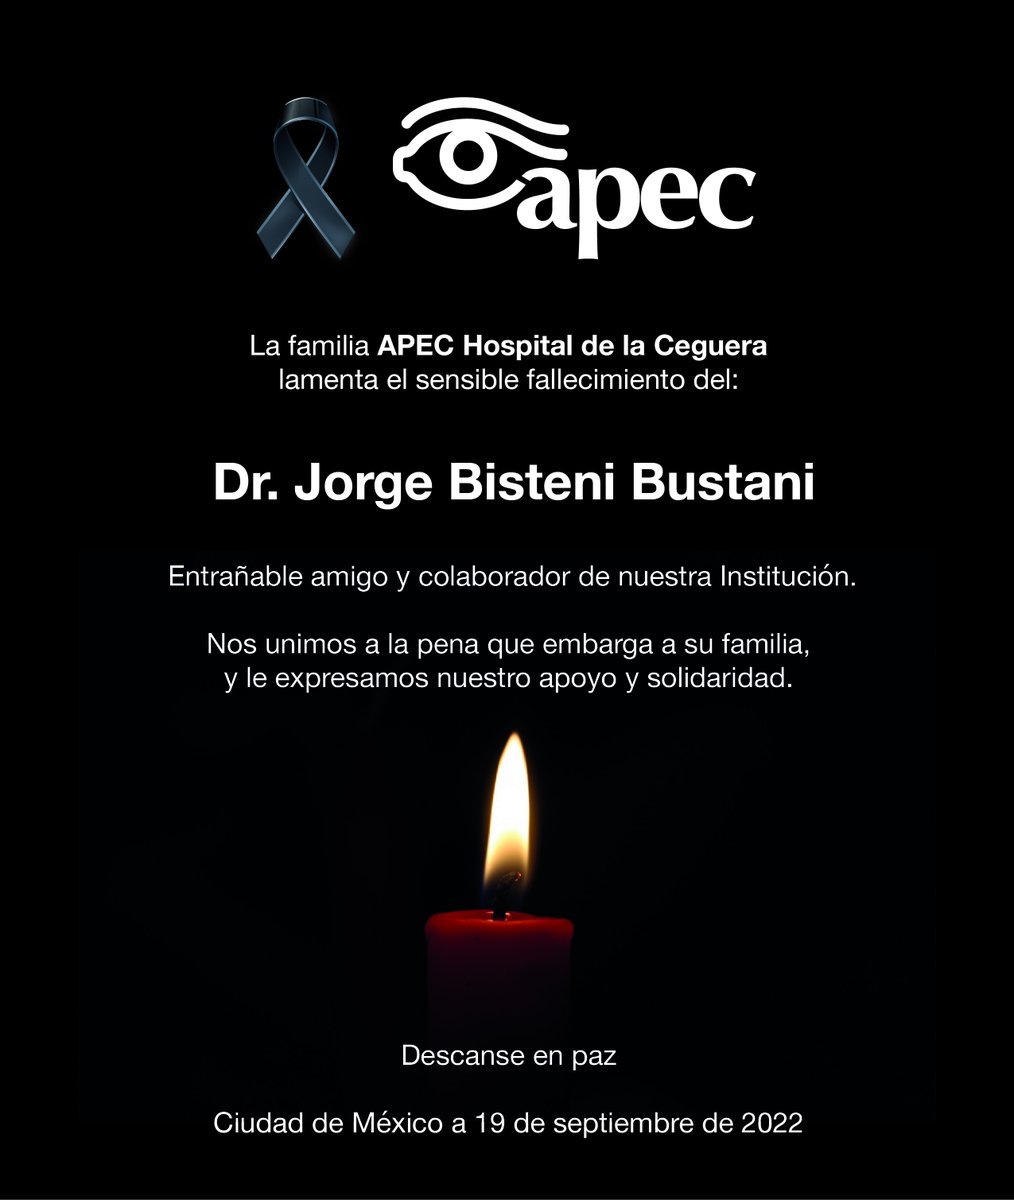 La Familia APEC Hospital de la Ceguera lamenta el sensible fallecimiento: Dr. Jorge Bisteni Bustani